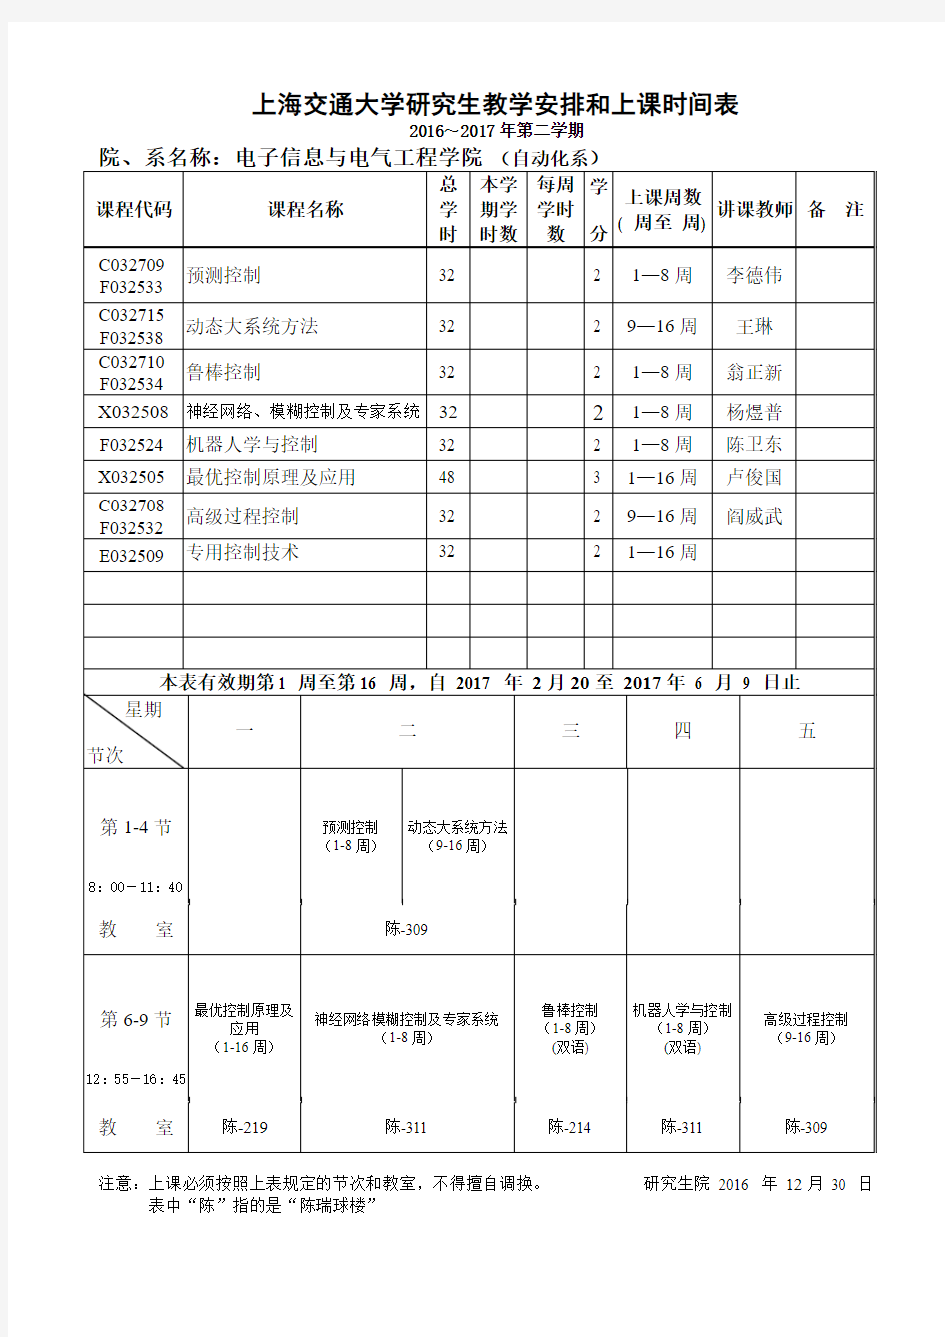 上海交通大学研究生教学安排和上课时间表-上海交通大学-电子信息